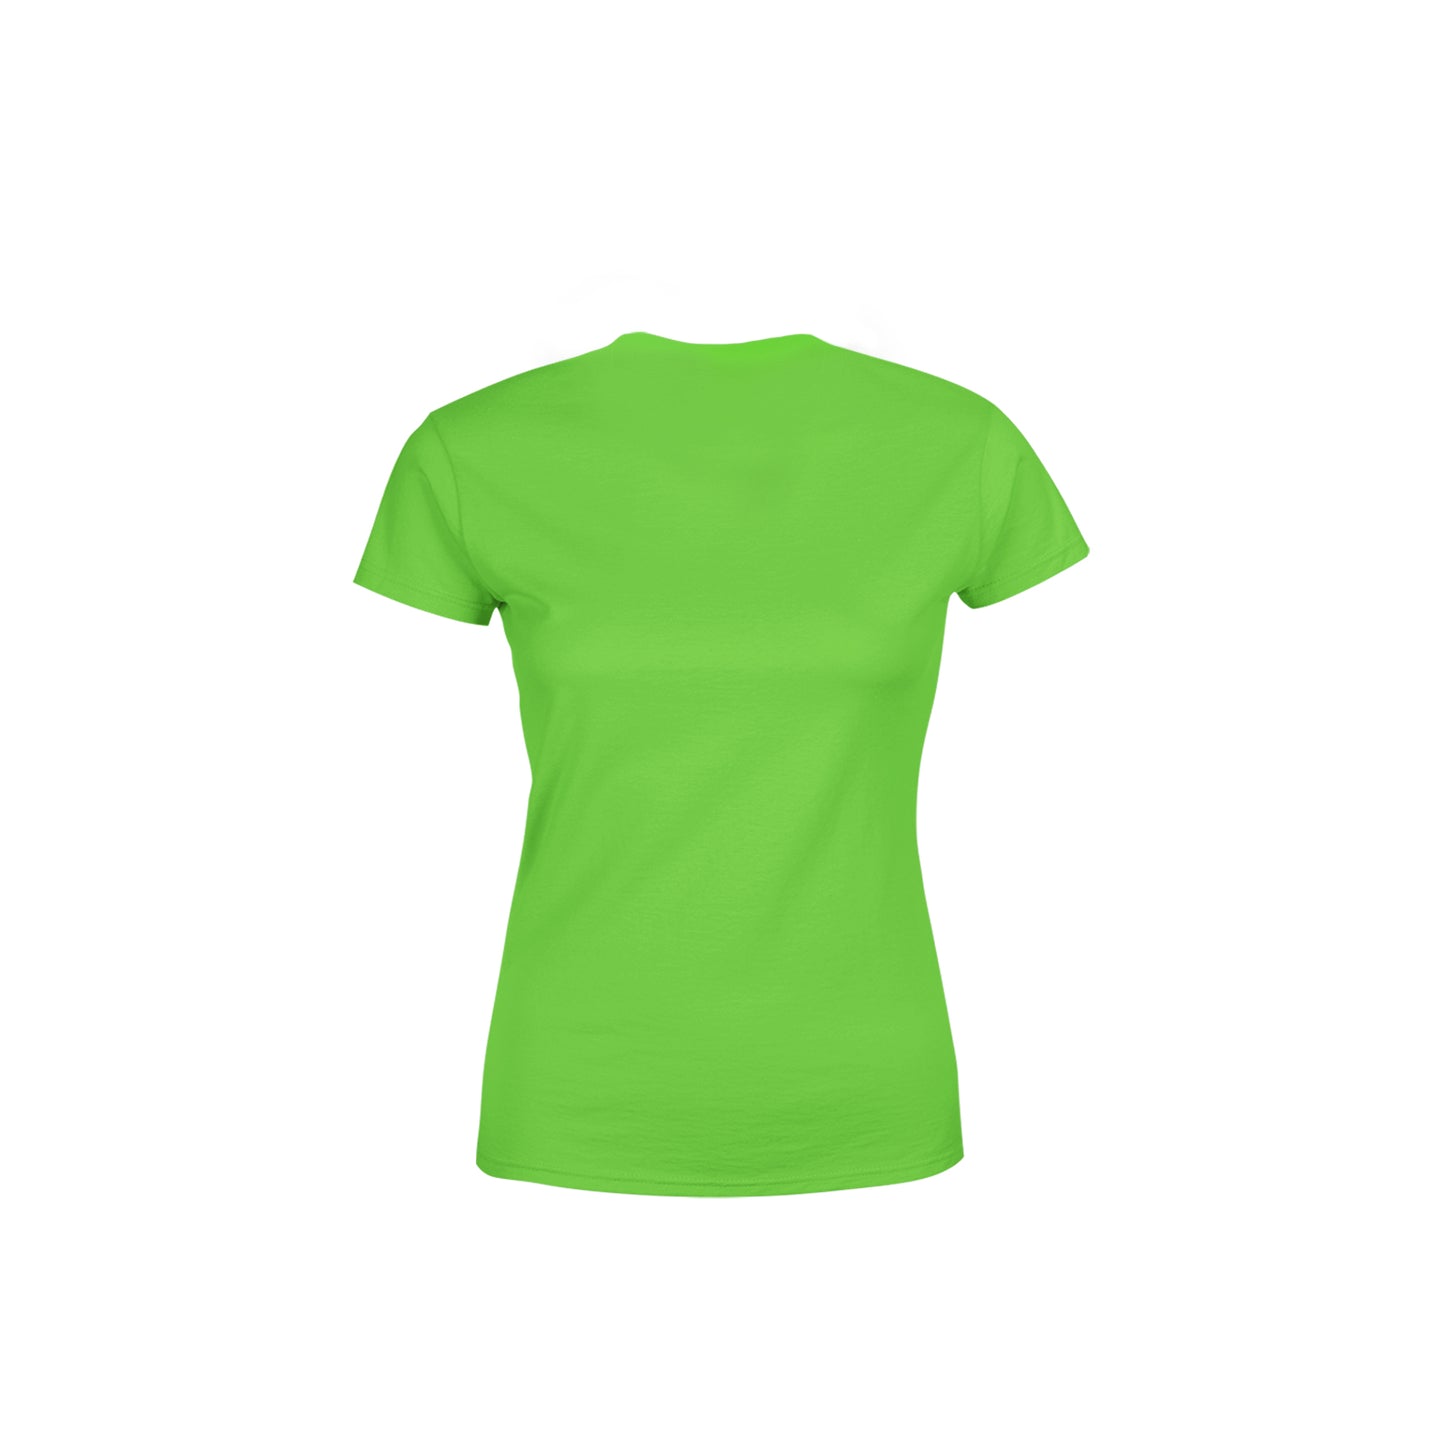 63 Number Women's T-Shirt (Liril Green)